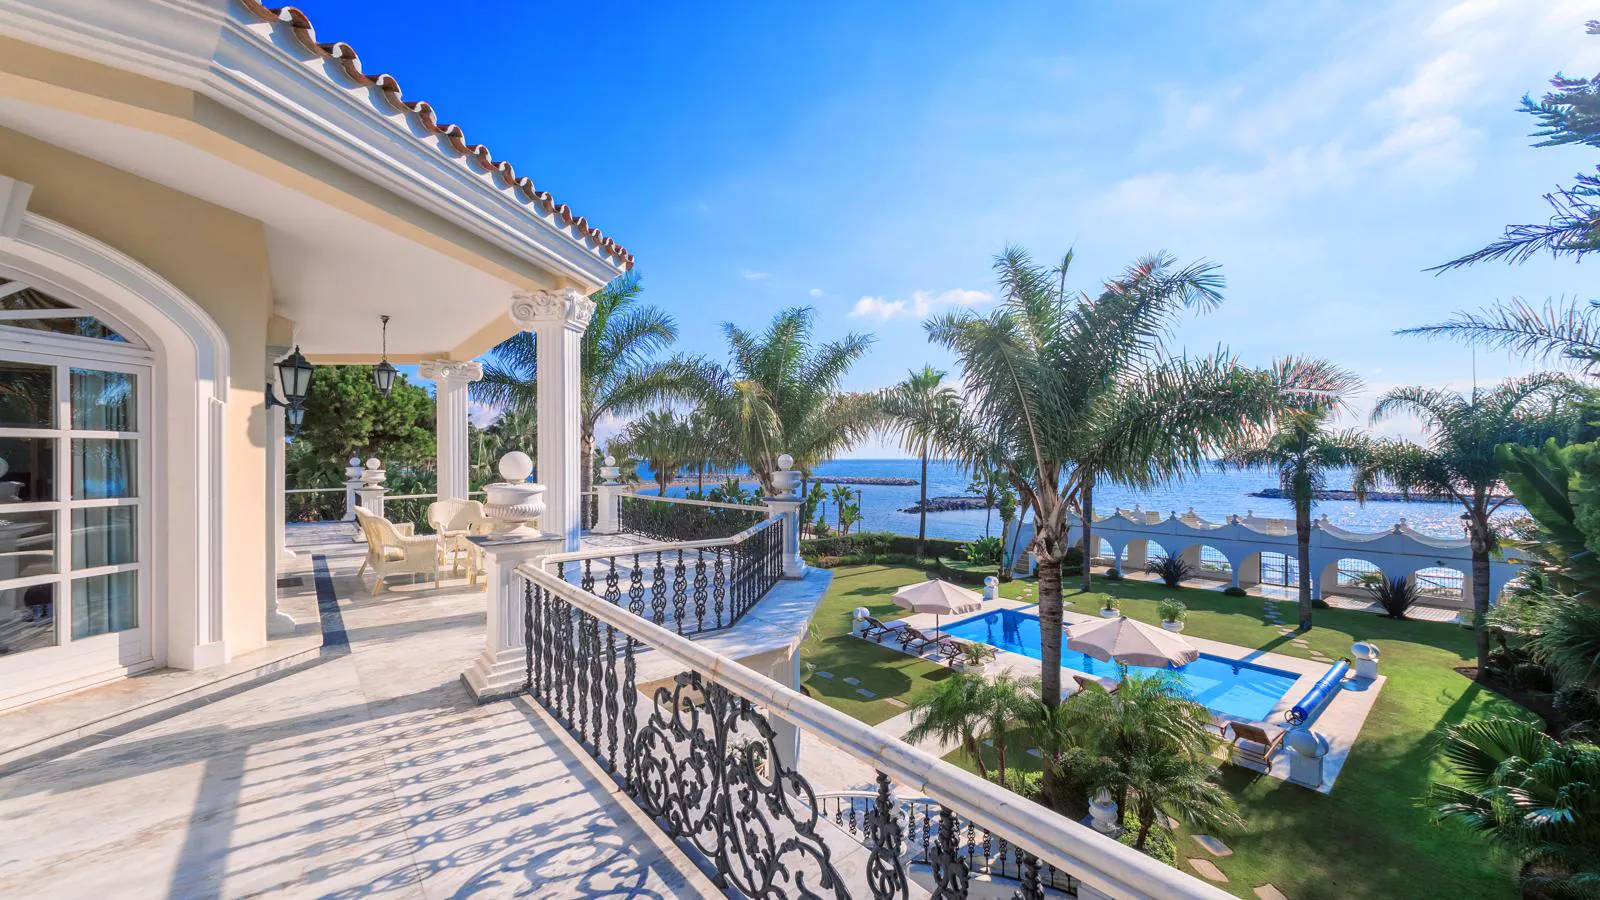 Villa El Martinete. La casa está construída sobre una finca de más de 4.000 m2. Además de la vivienda principal hay dos casas de invitados, una piscina exterior, hermosos espacios ajardinados y playa privada